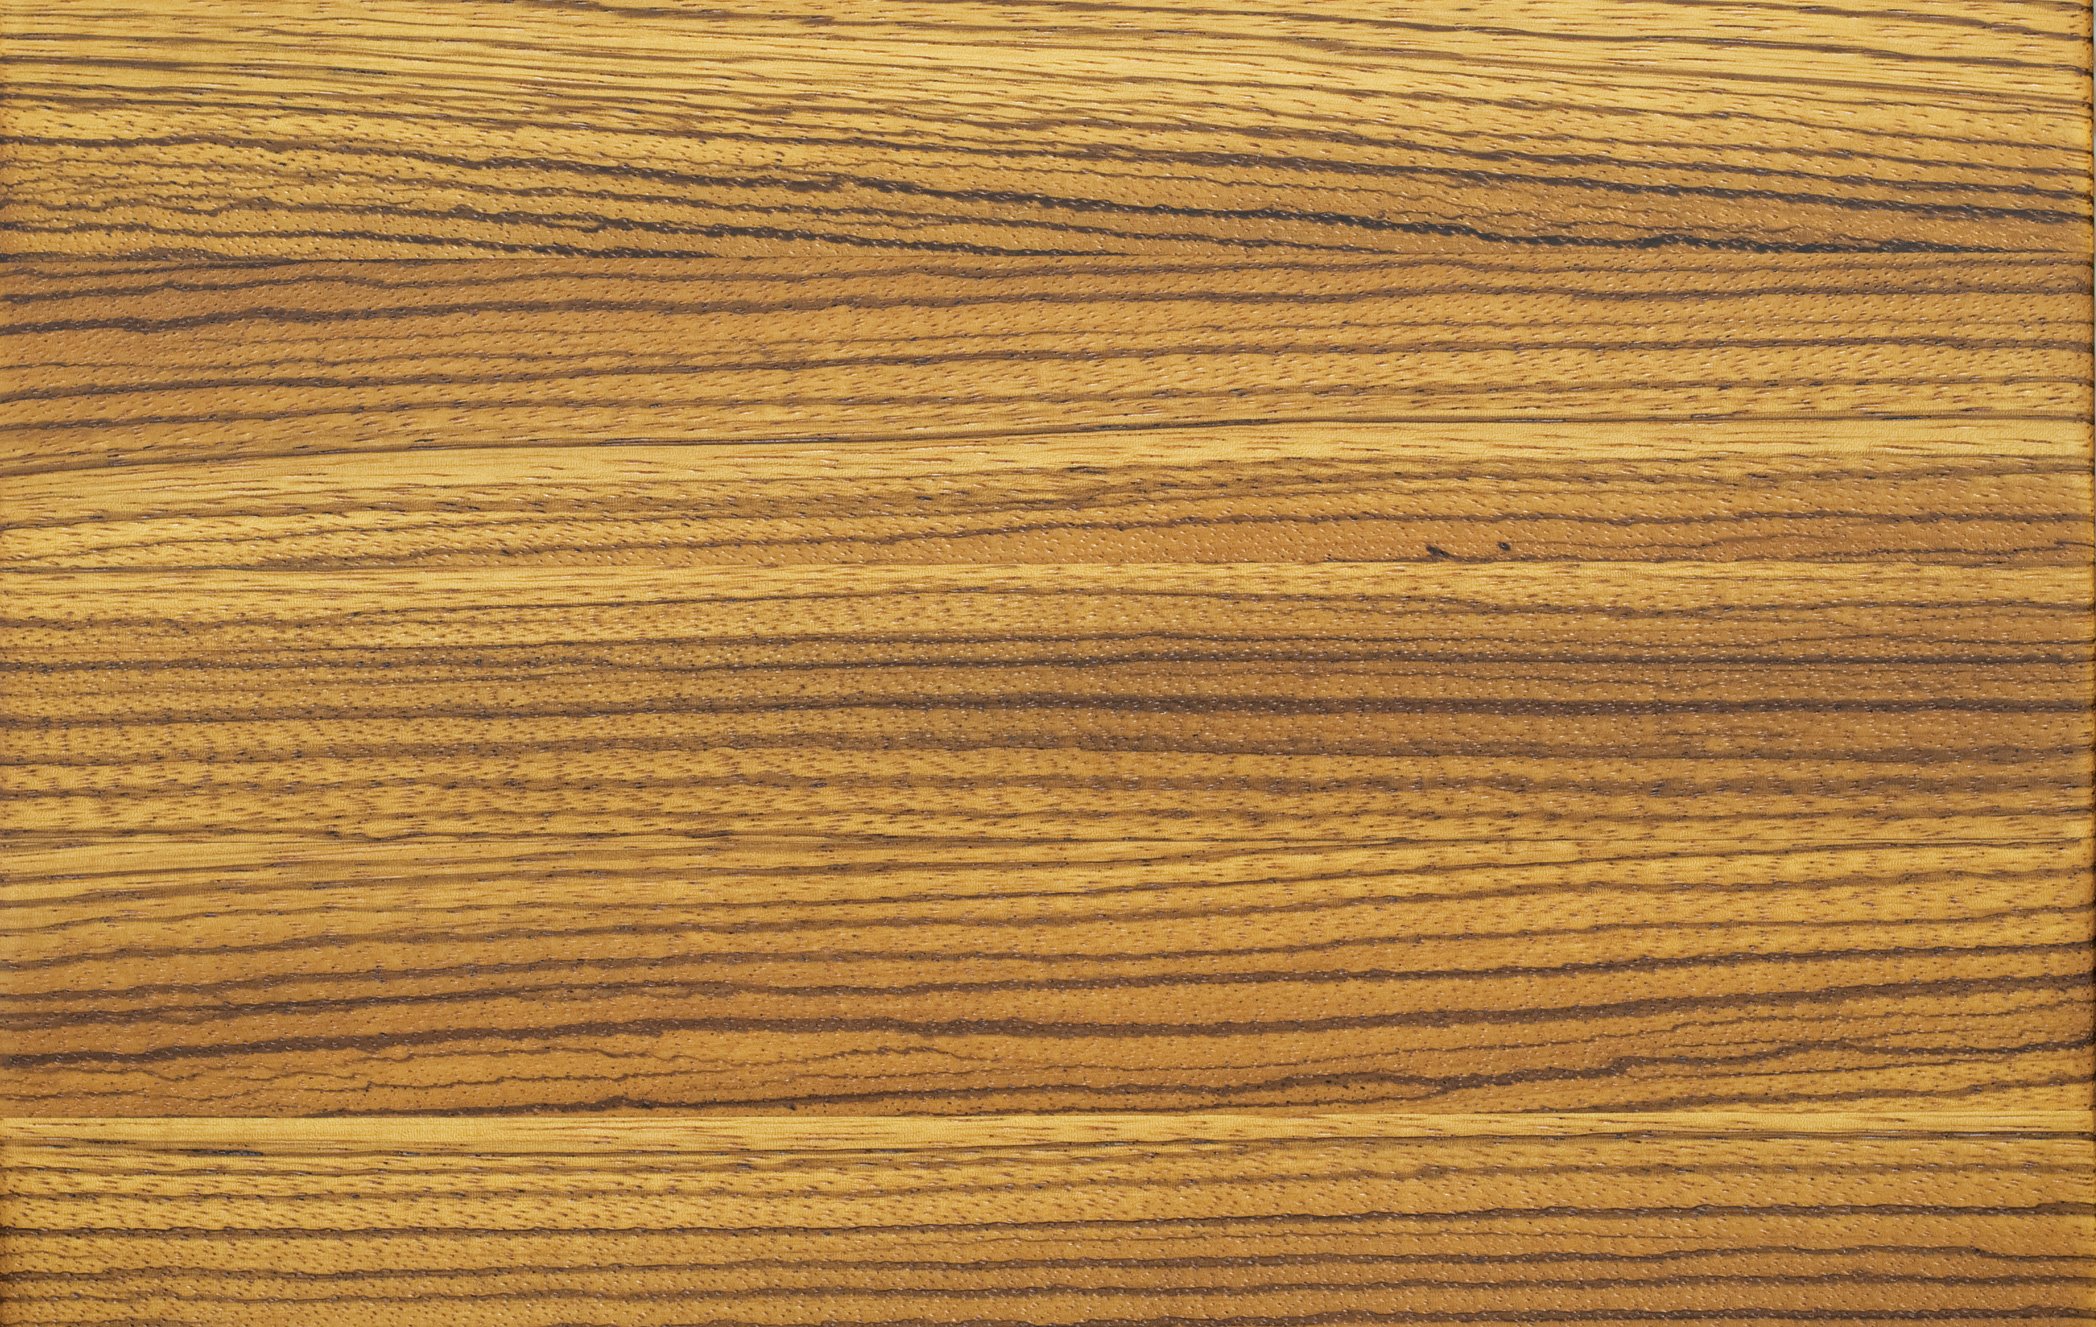 Липа текстура: Липа, описание древесины липы для паркета — Интернет магазин  мебели МебПилот.ру — широкий выбор, низкие цены!